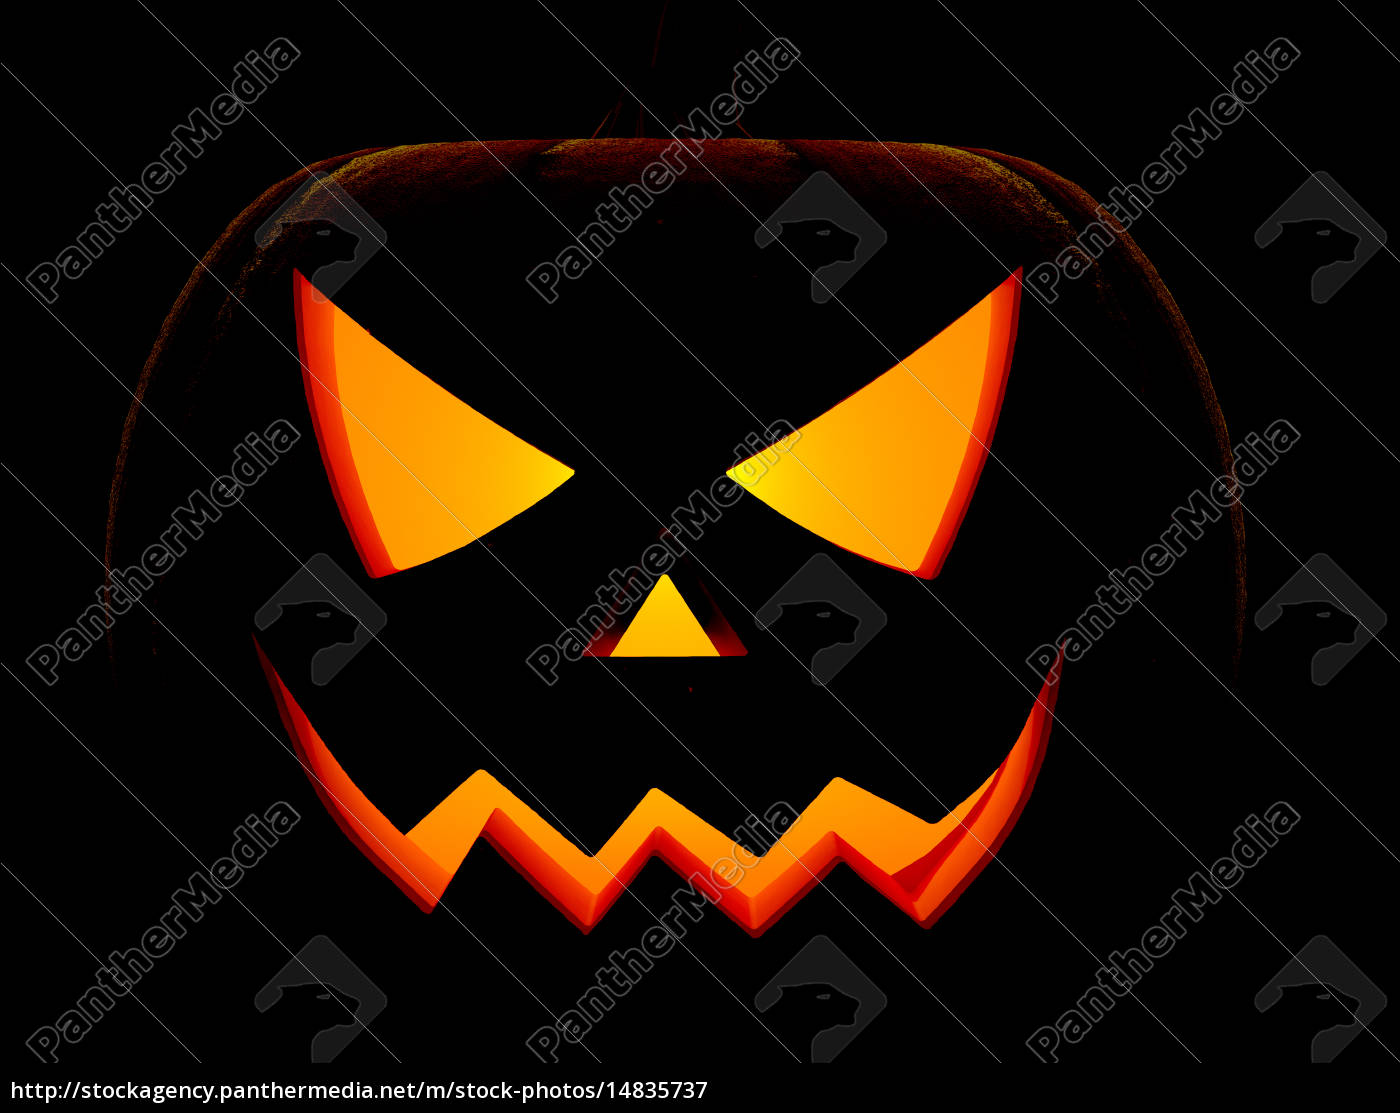 Abóbora de halloween com cara assustadora